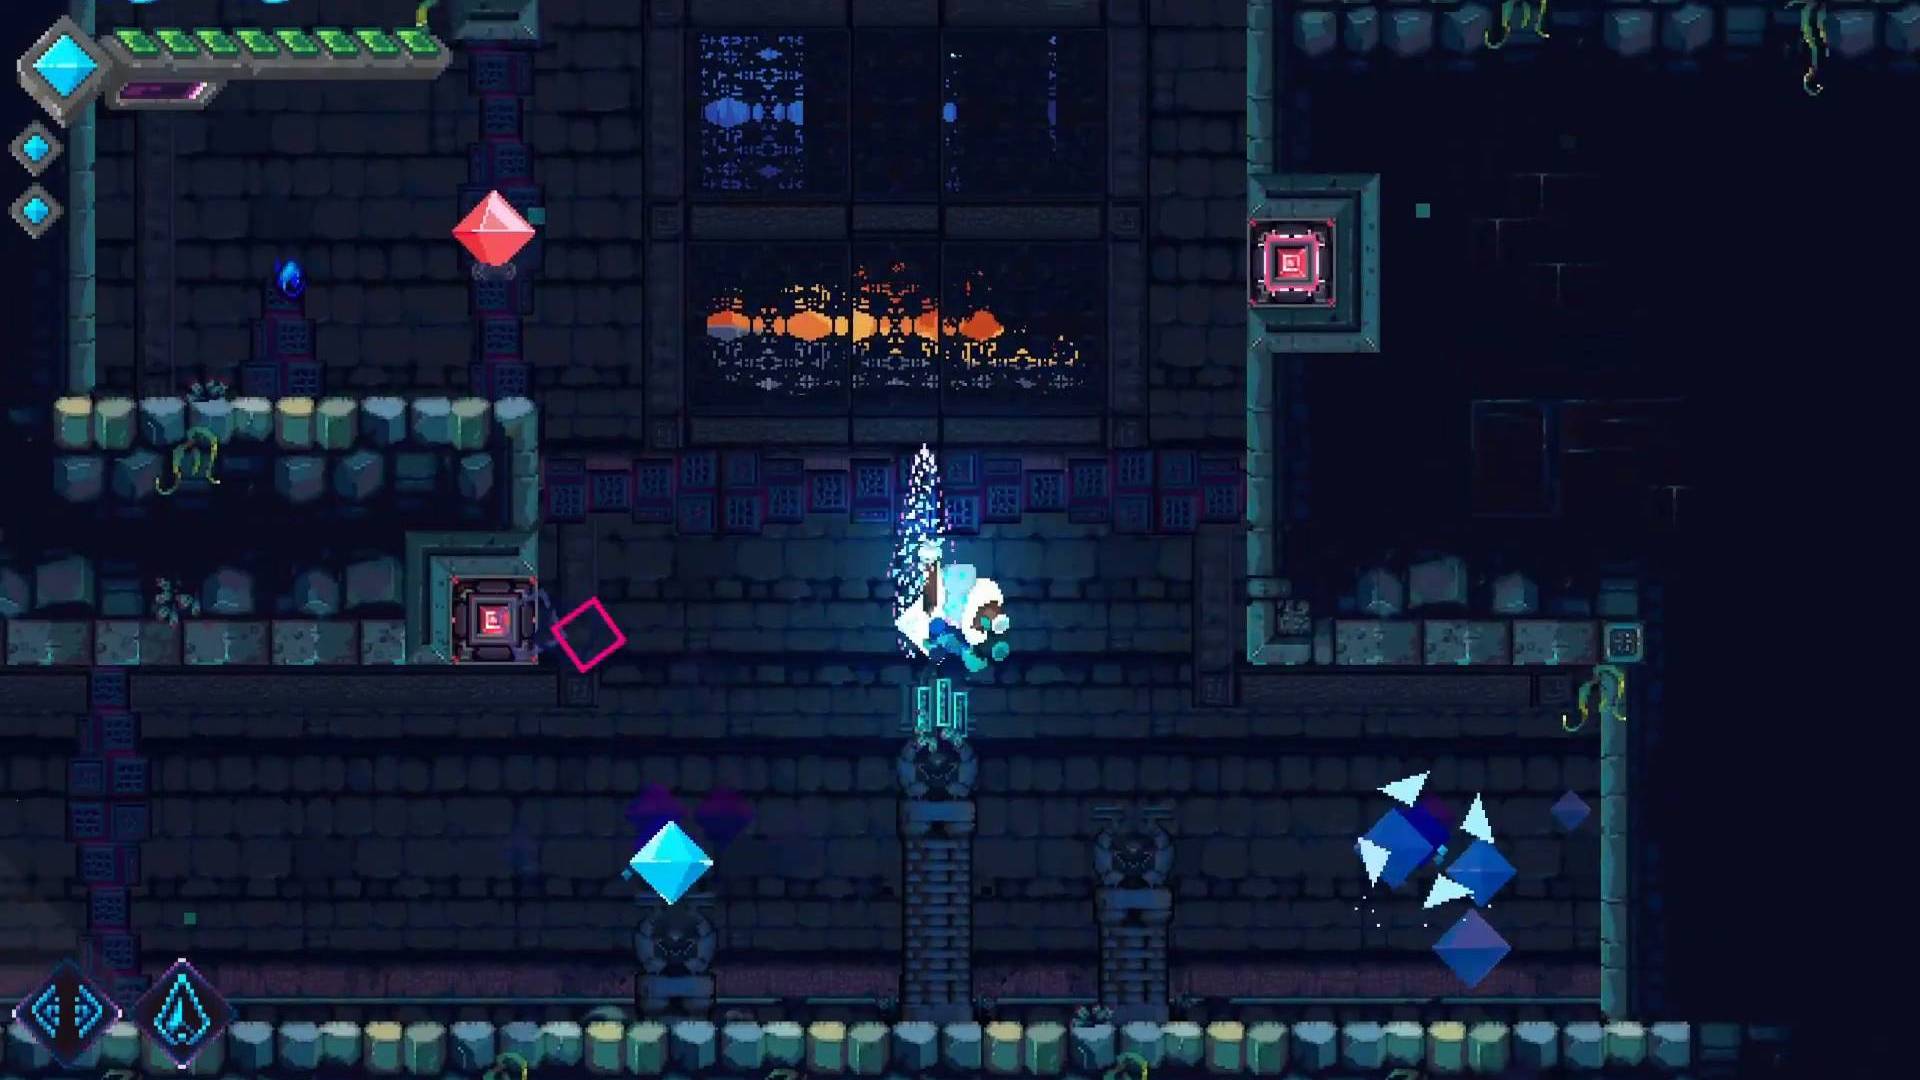 Mega Man et Doom entrent en collision dans un nouveau jeu de plateforme indépendant : un personnage de pixel bleu se précipite vers le haut dans une zone sombre de donjon